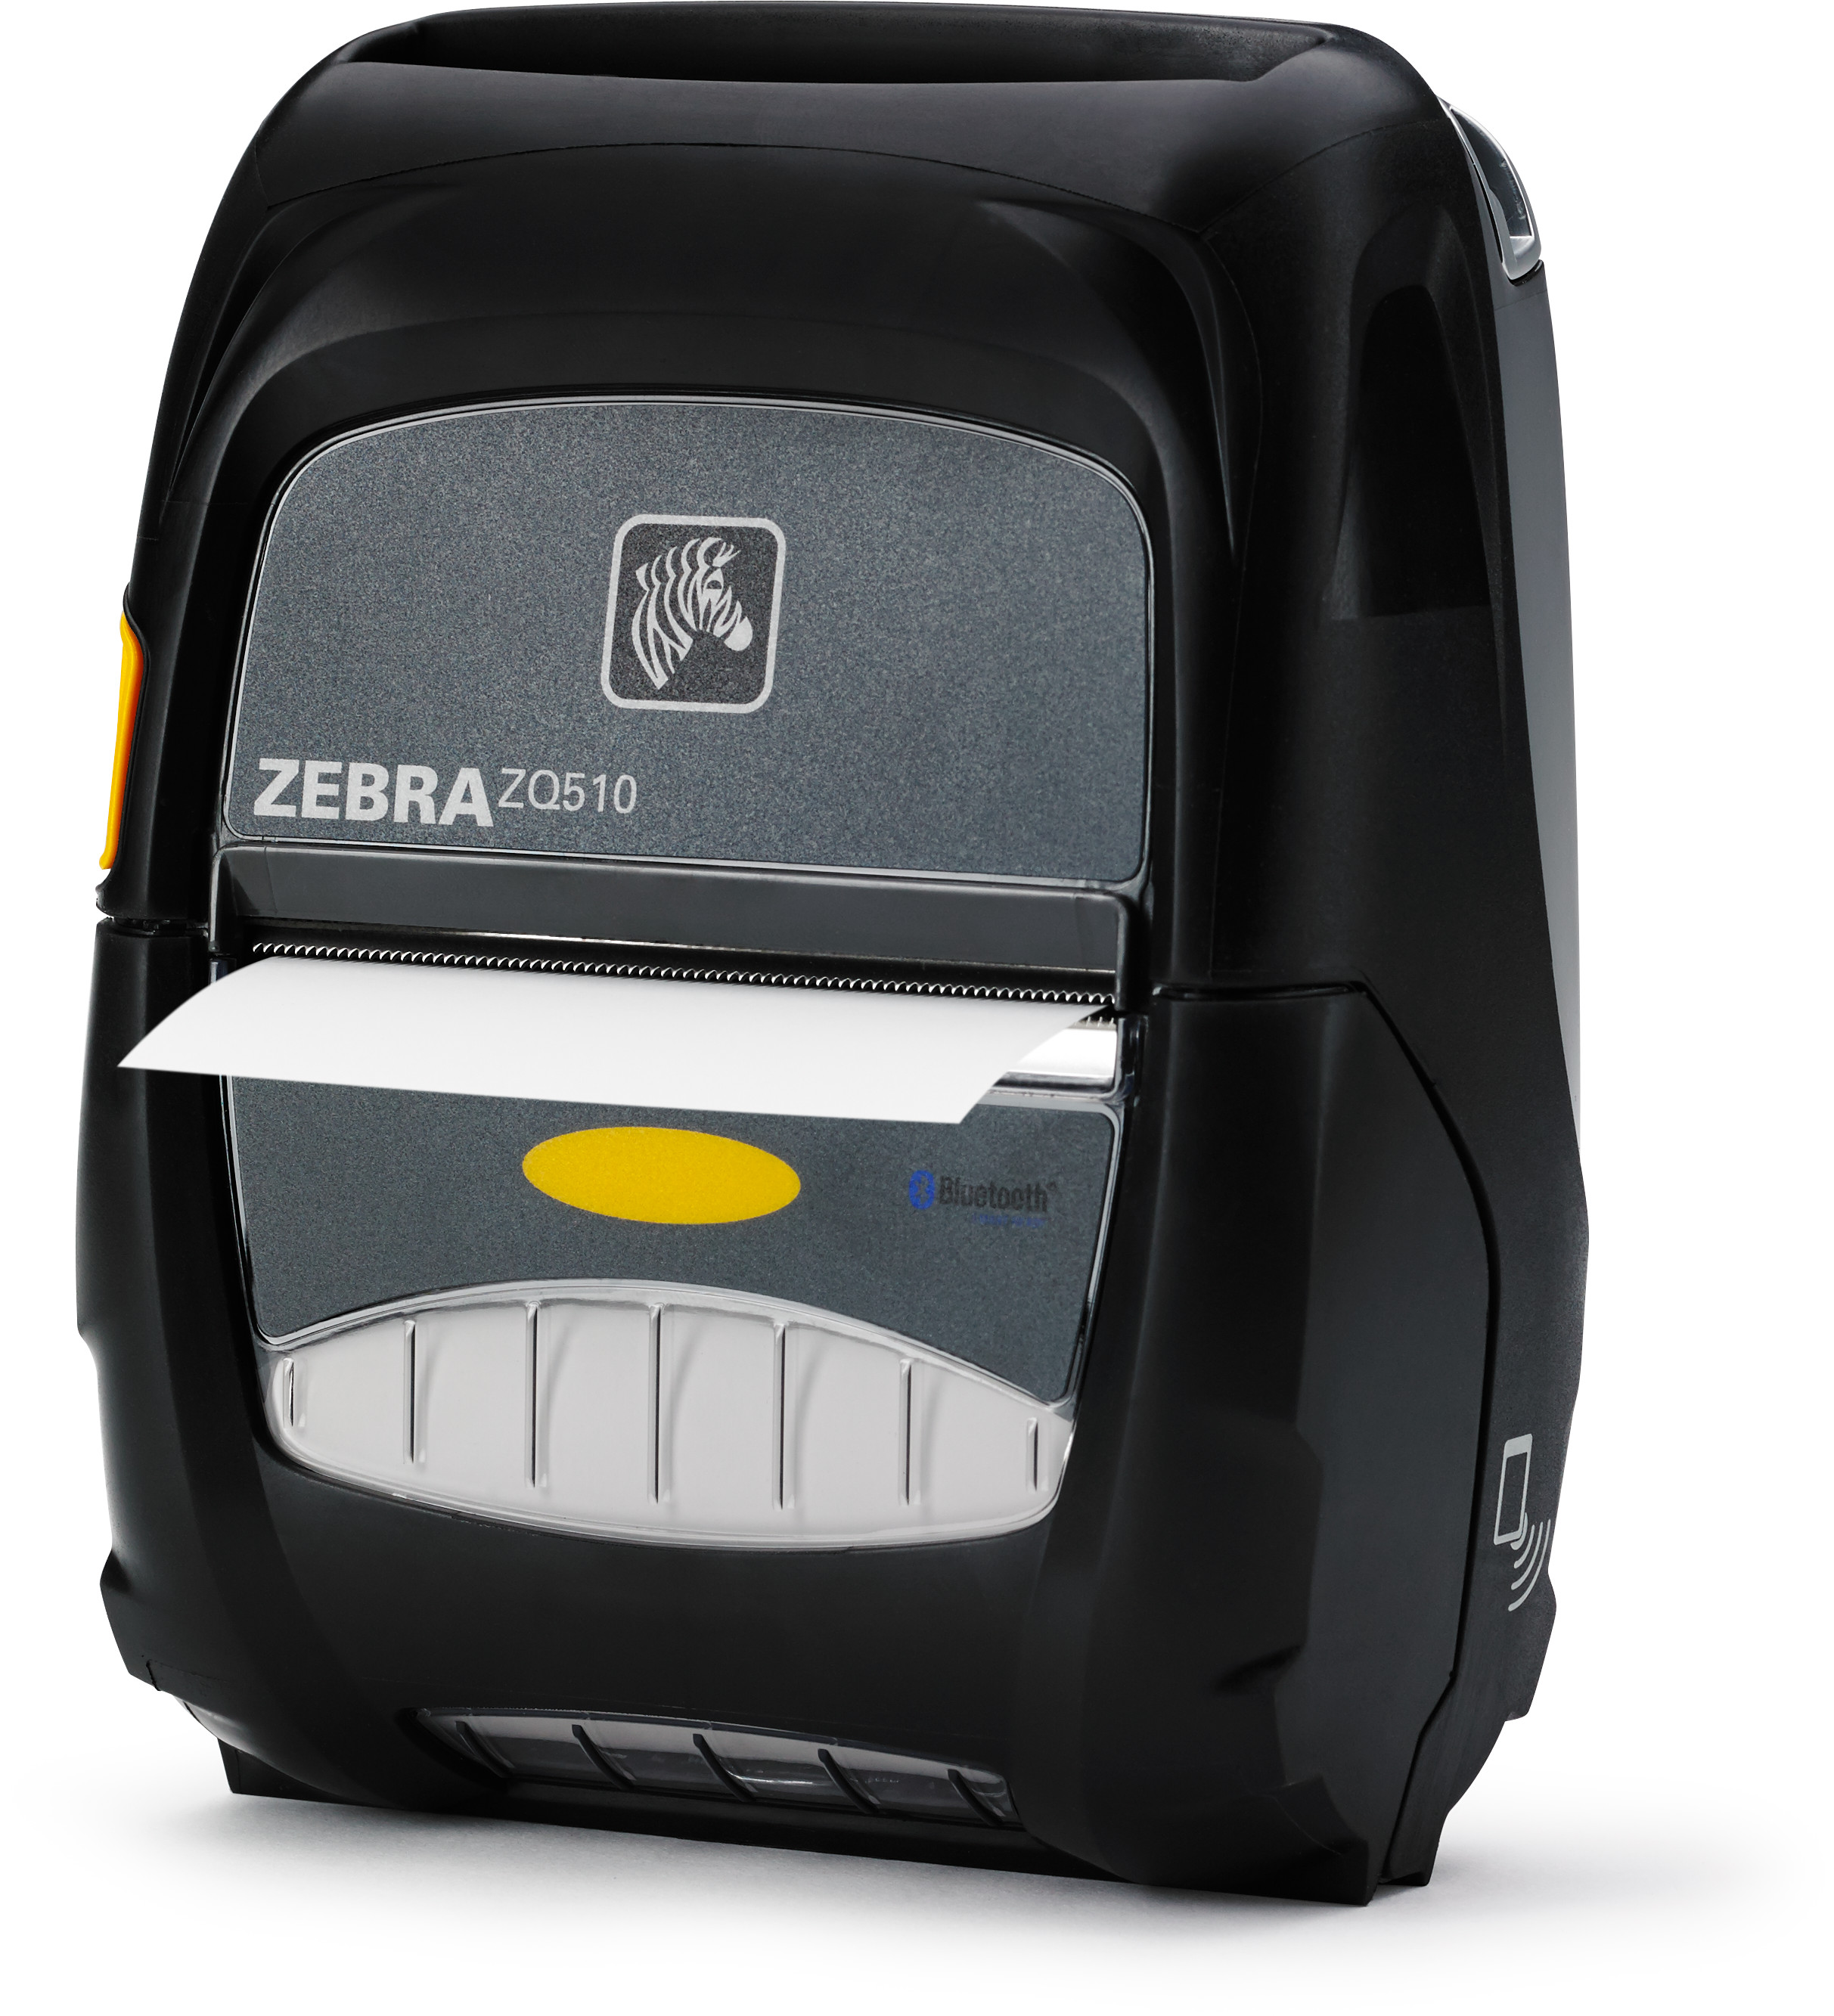 Zq510 Stampante Portatile Zebra Teleserviziit 1424